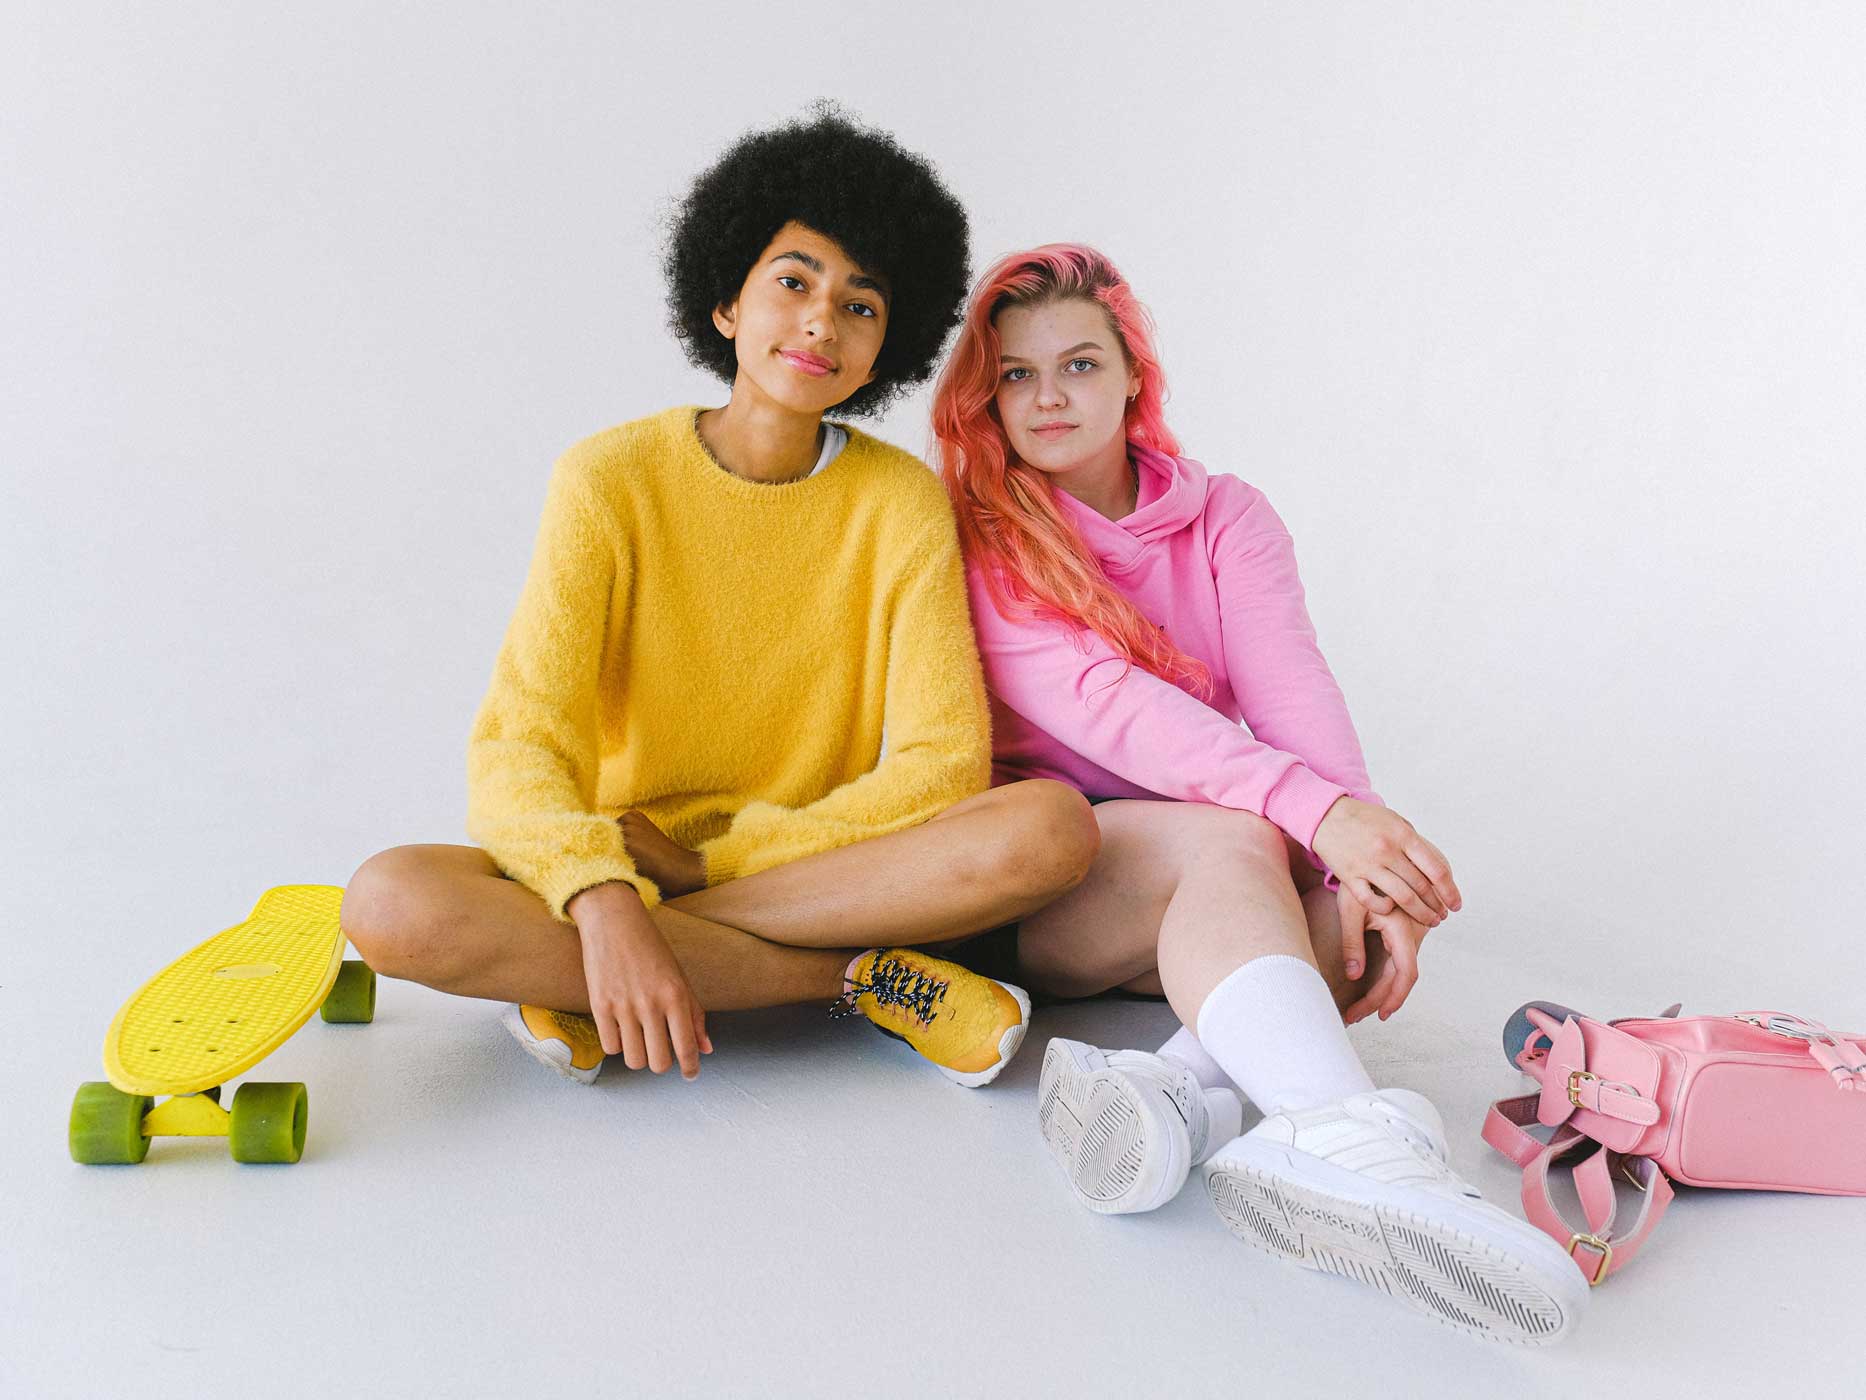 Zwei Mädchen sitzen vor einem neutralen Hintergrund, die eine trägt ein komplett gelbes Outfit, die andere ist nur in Pink gekleidet